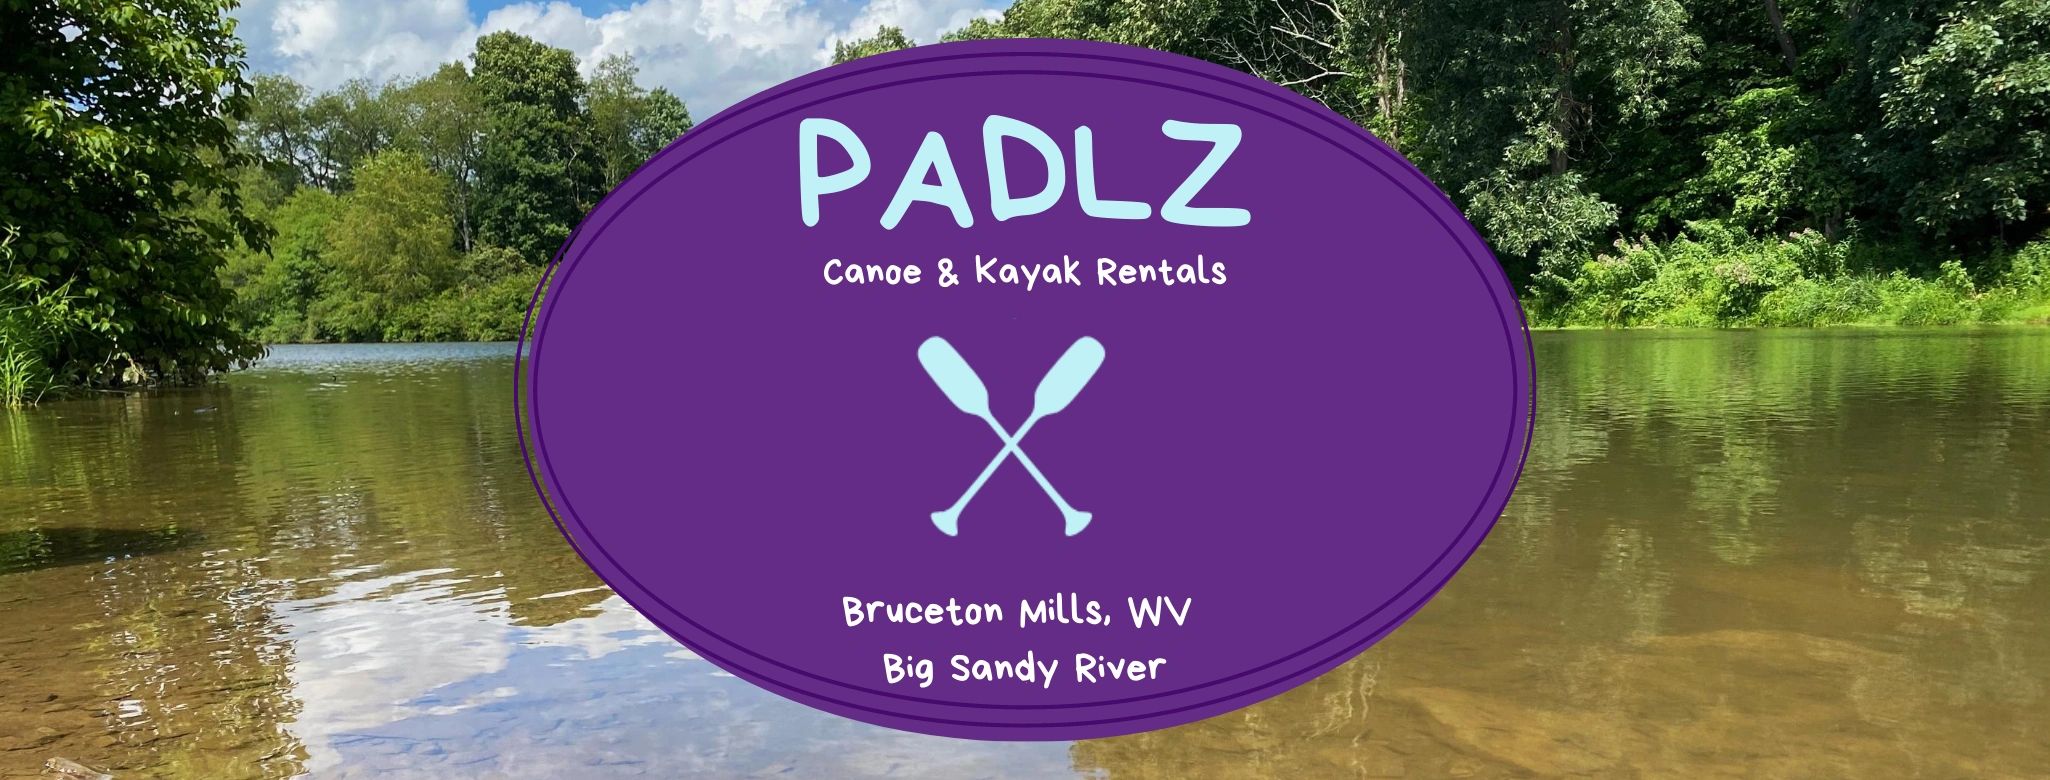 paddling, kayaking in WV, Boating in WV, Paddle 